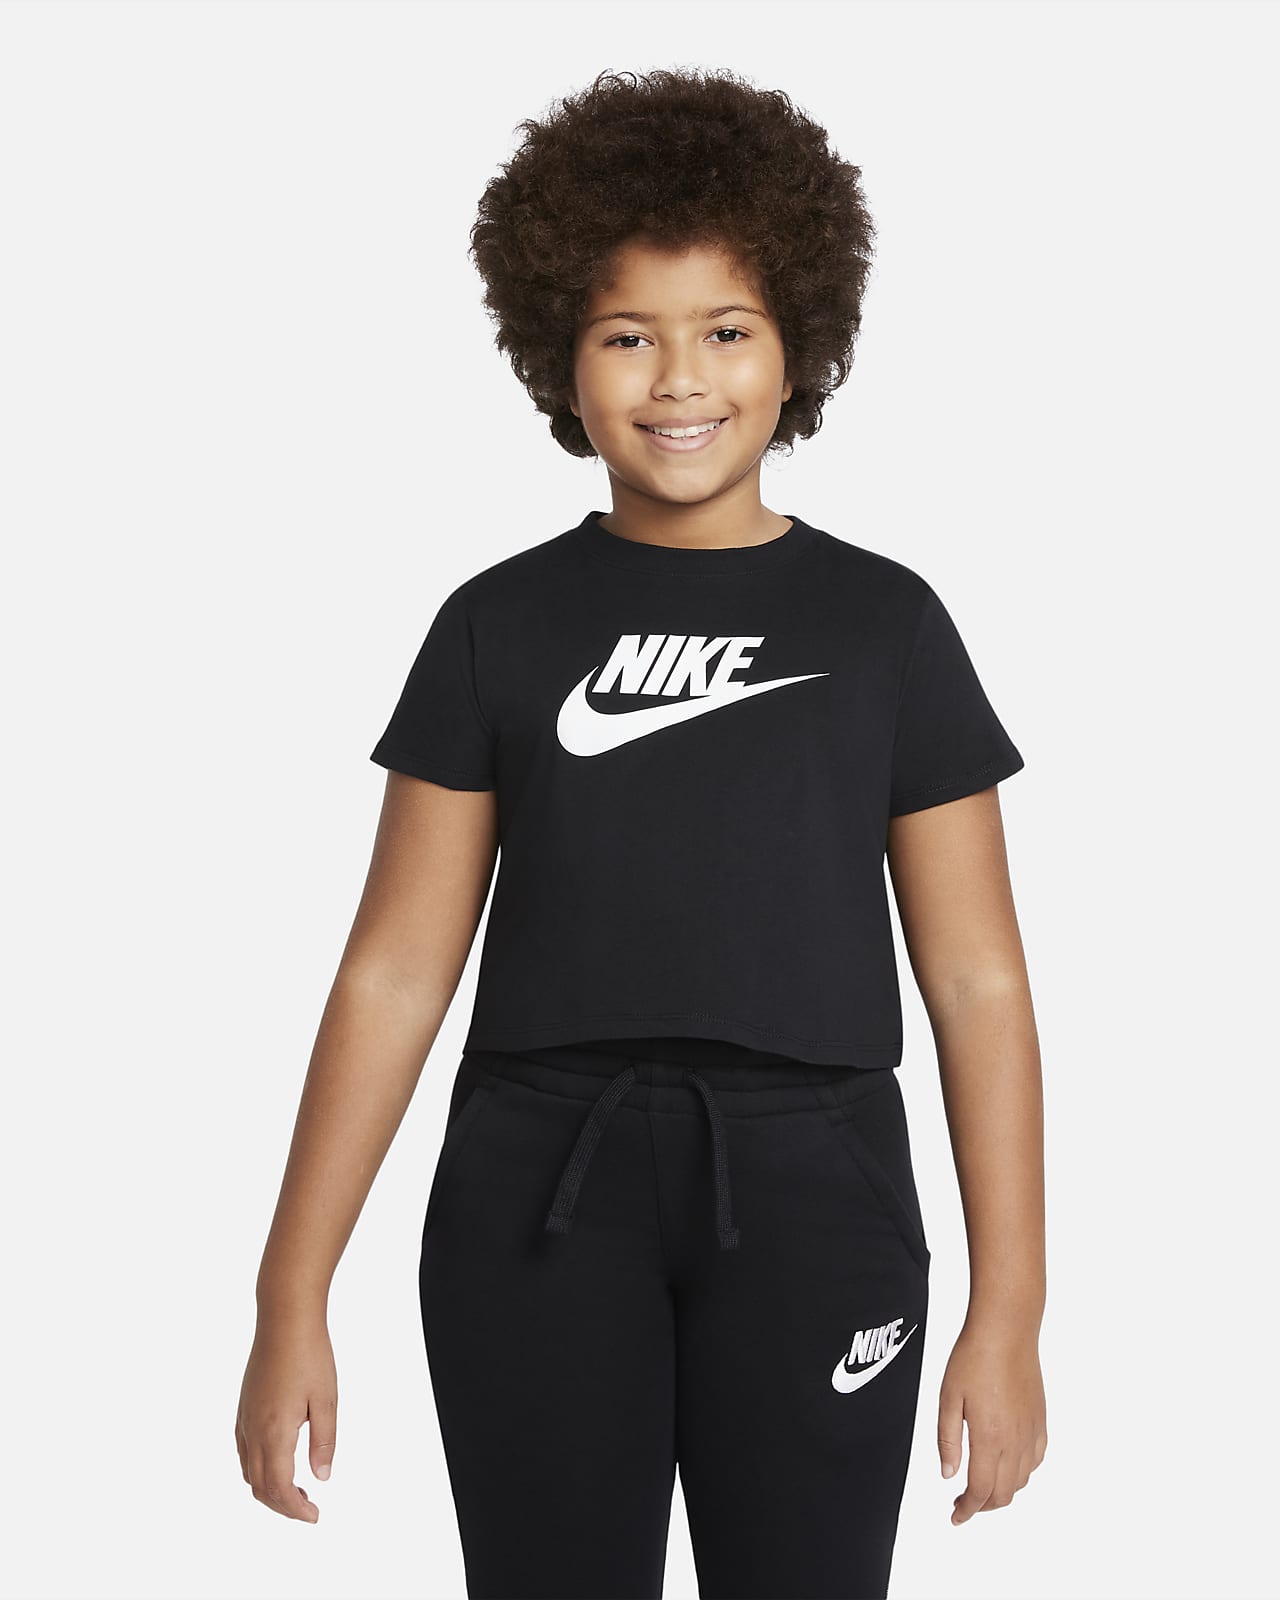 เสื้อยืดเอวลอยเด็กโต Nike Sportswear (หญิง)